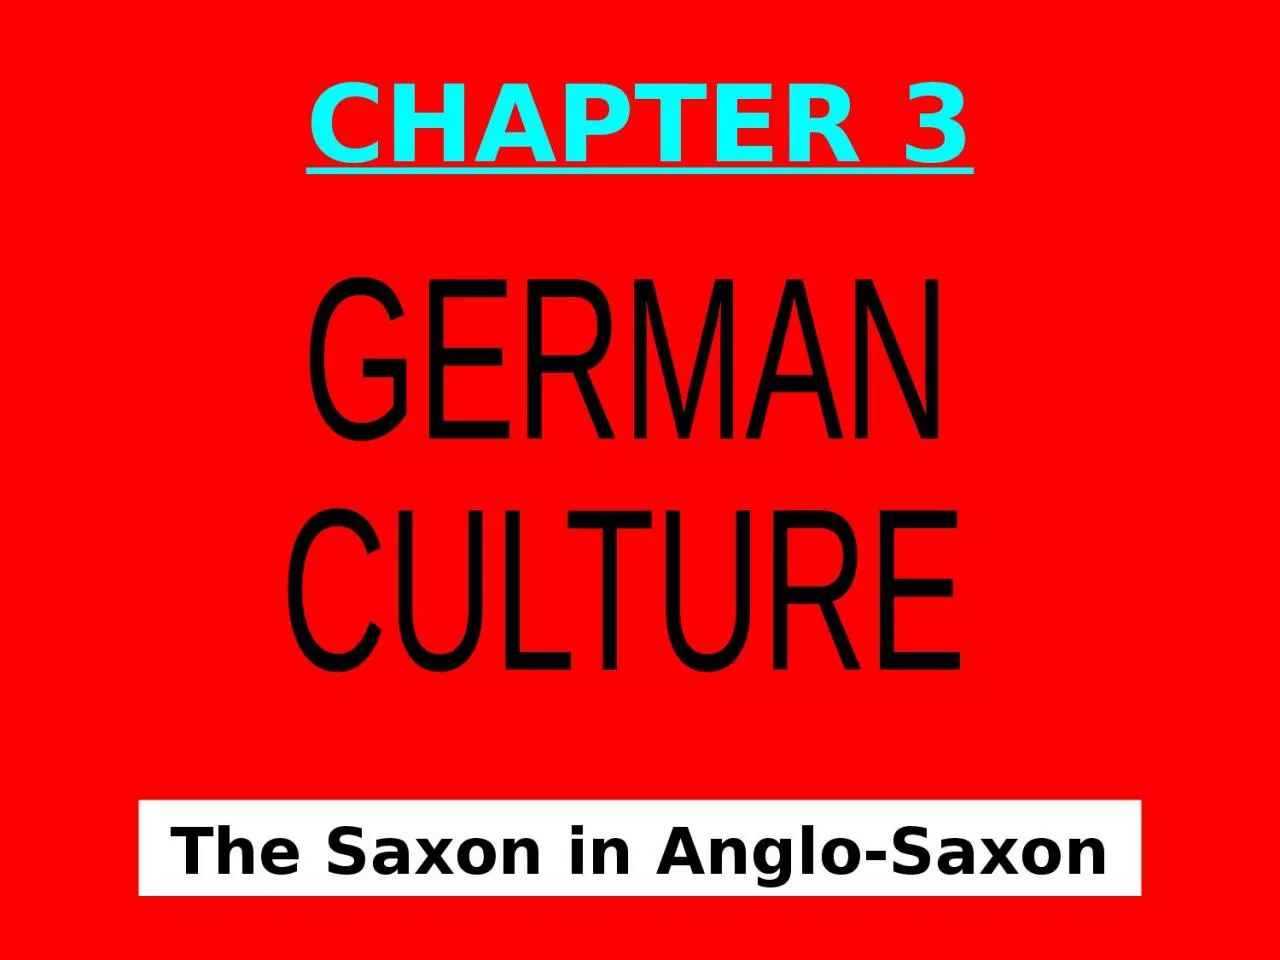 The Saxon in Anglo-Saxon